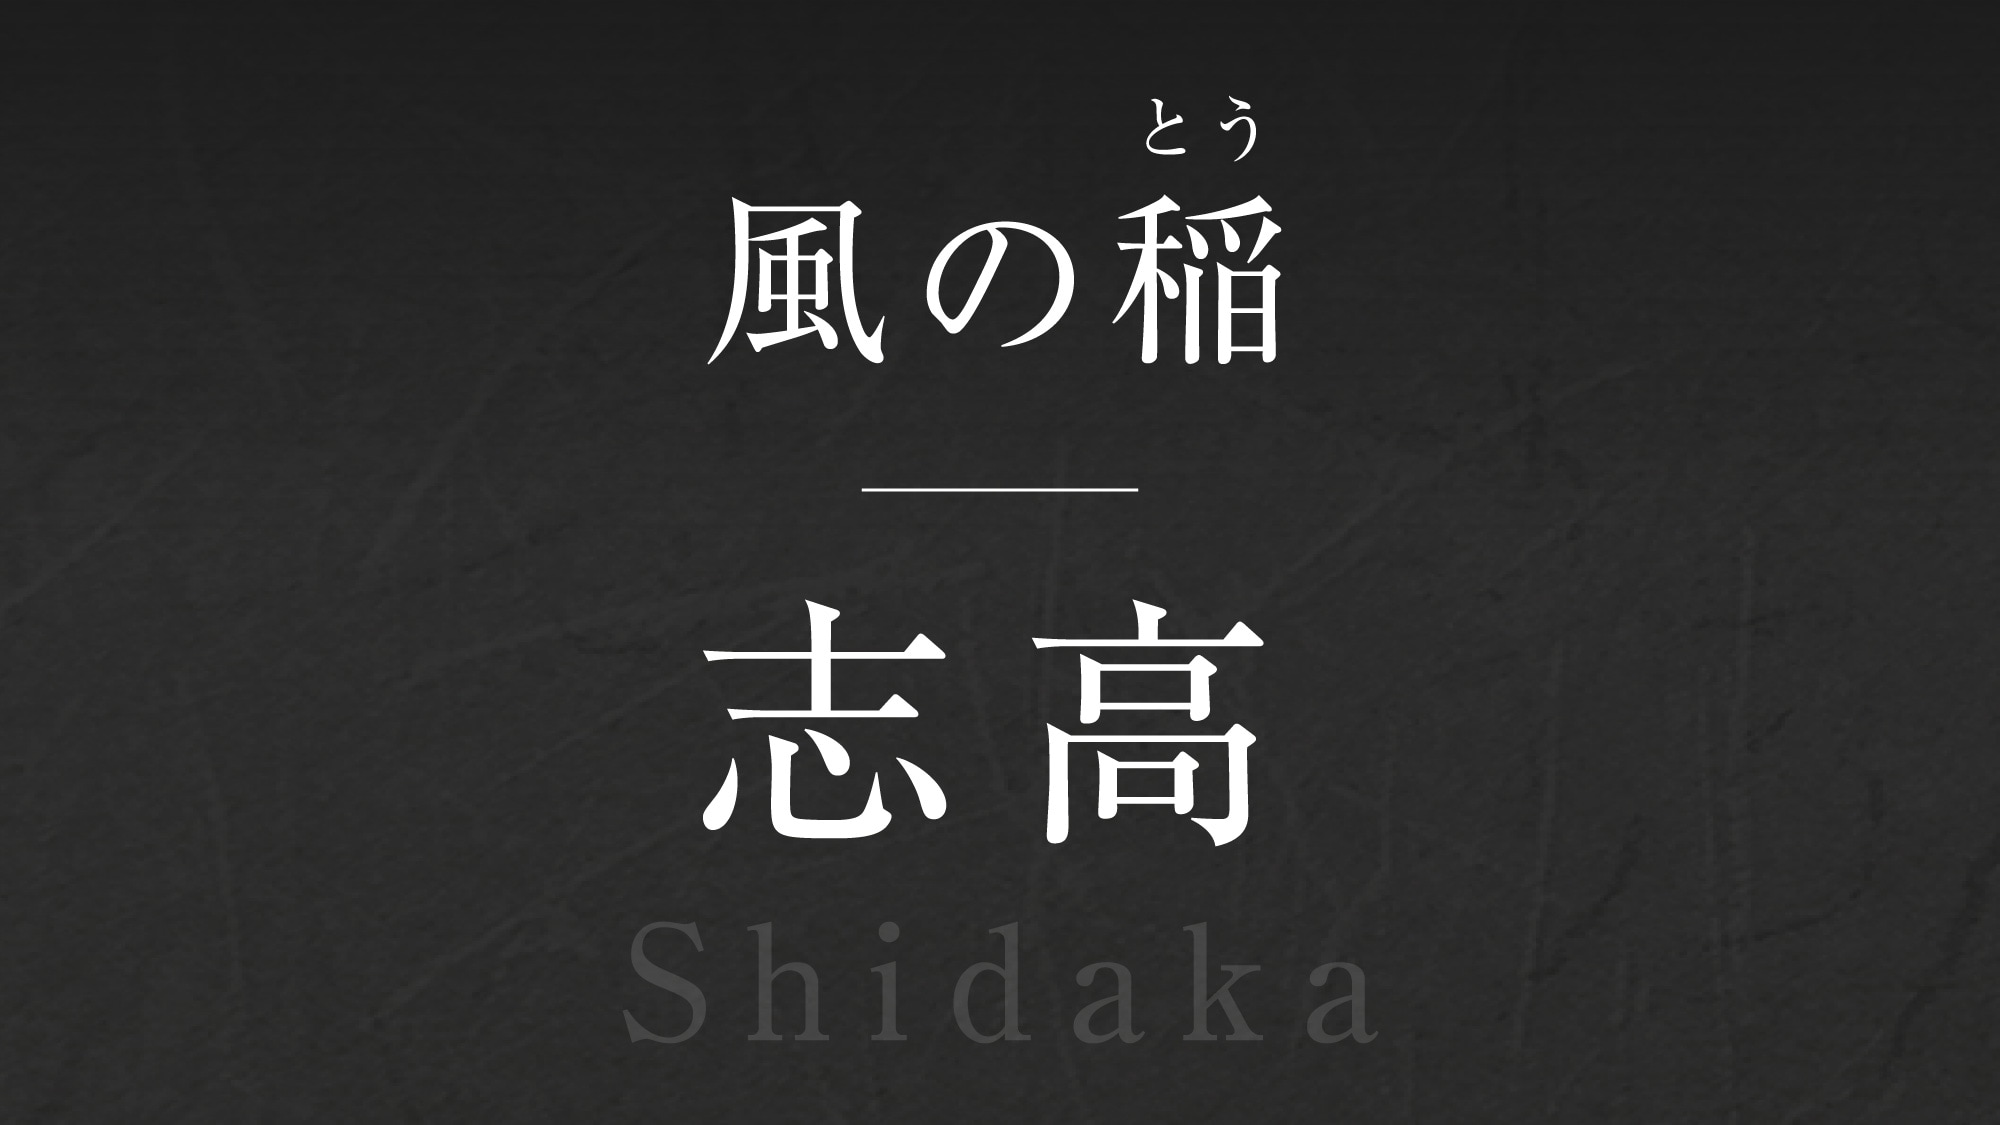 Wind rice [Shidaka] -Shidaka-